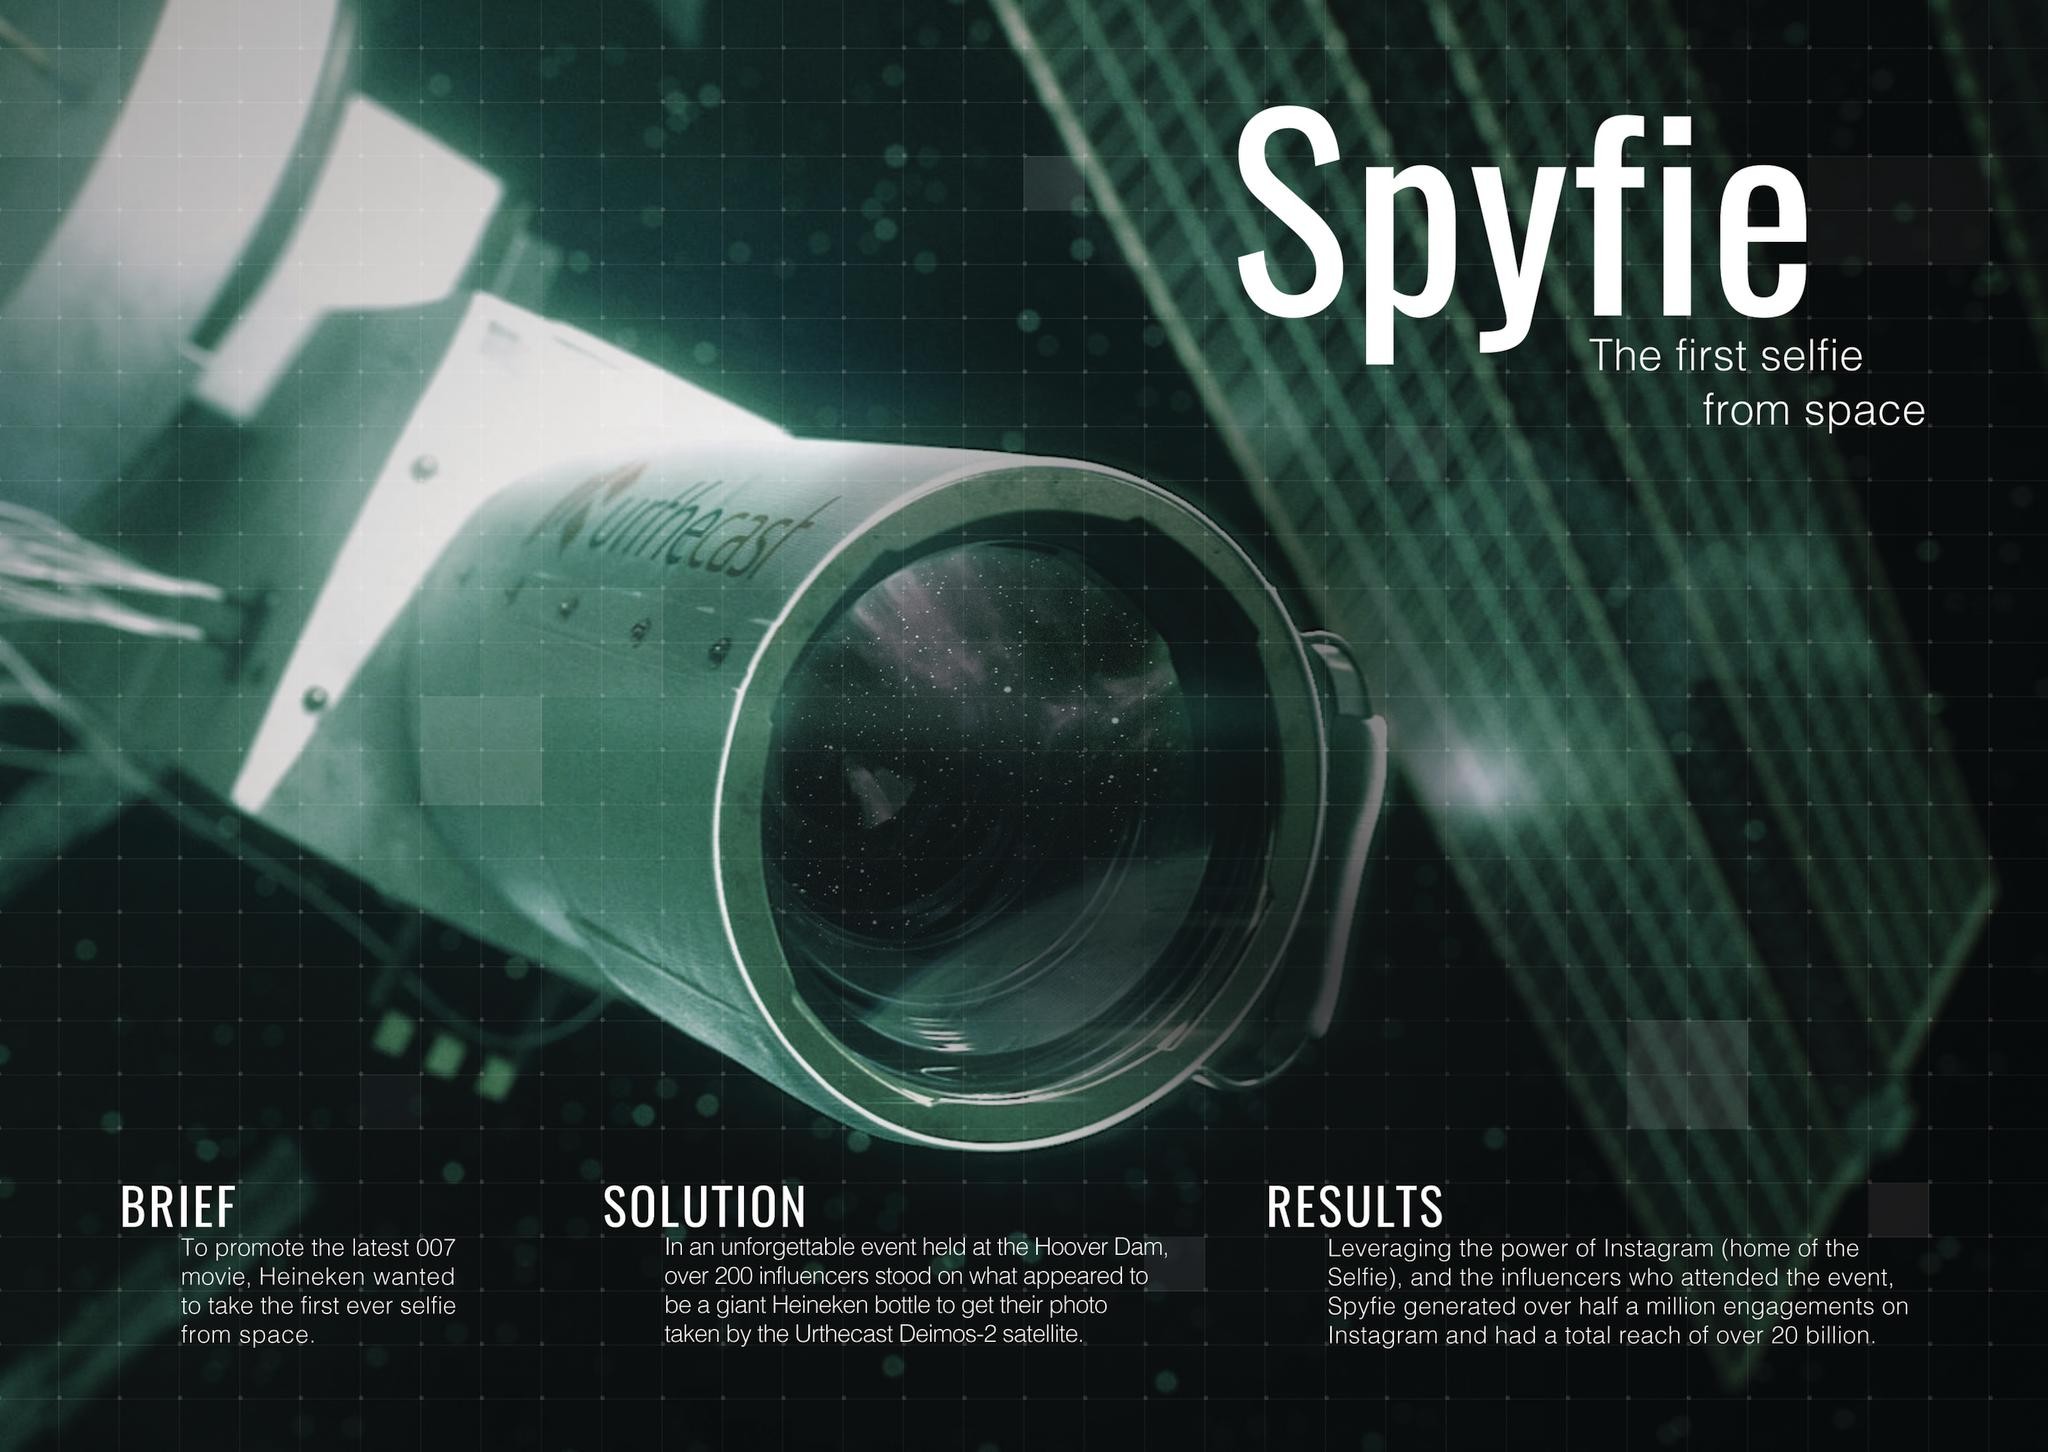 Heineken: Spyfie